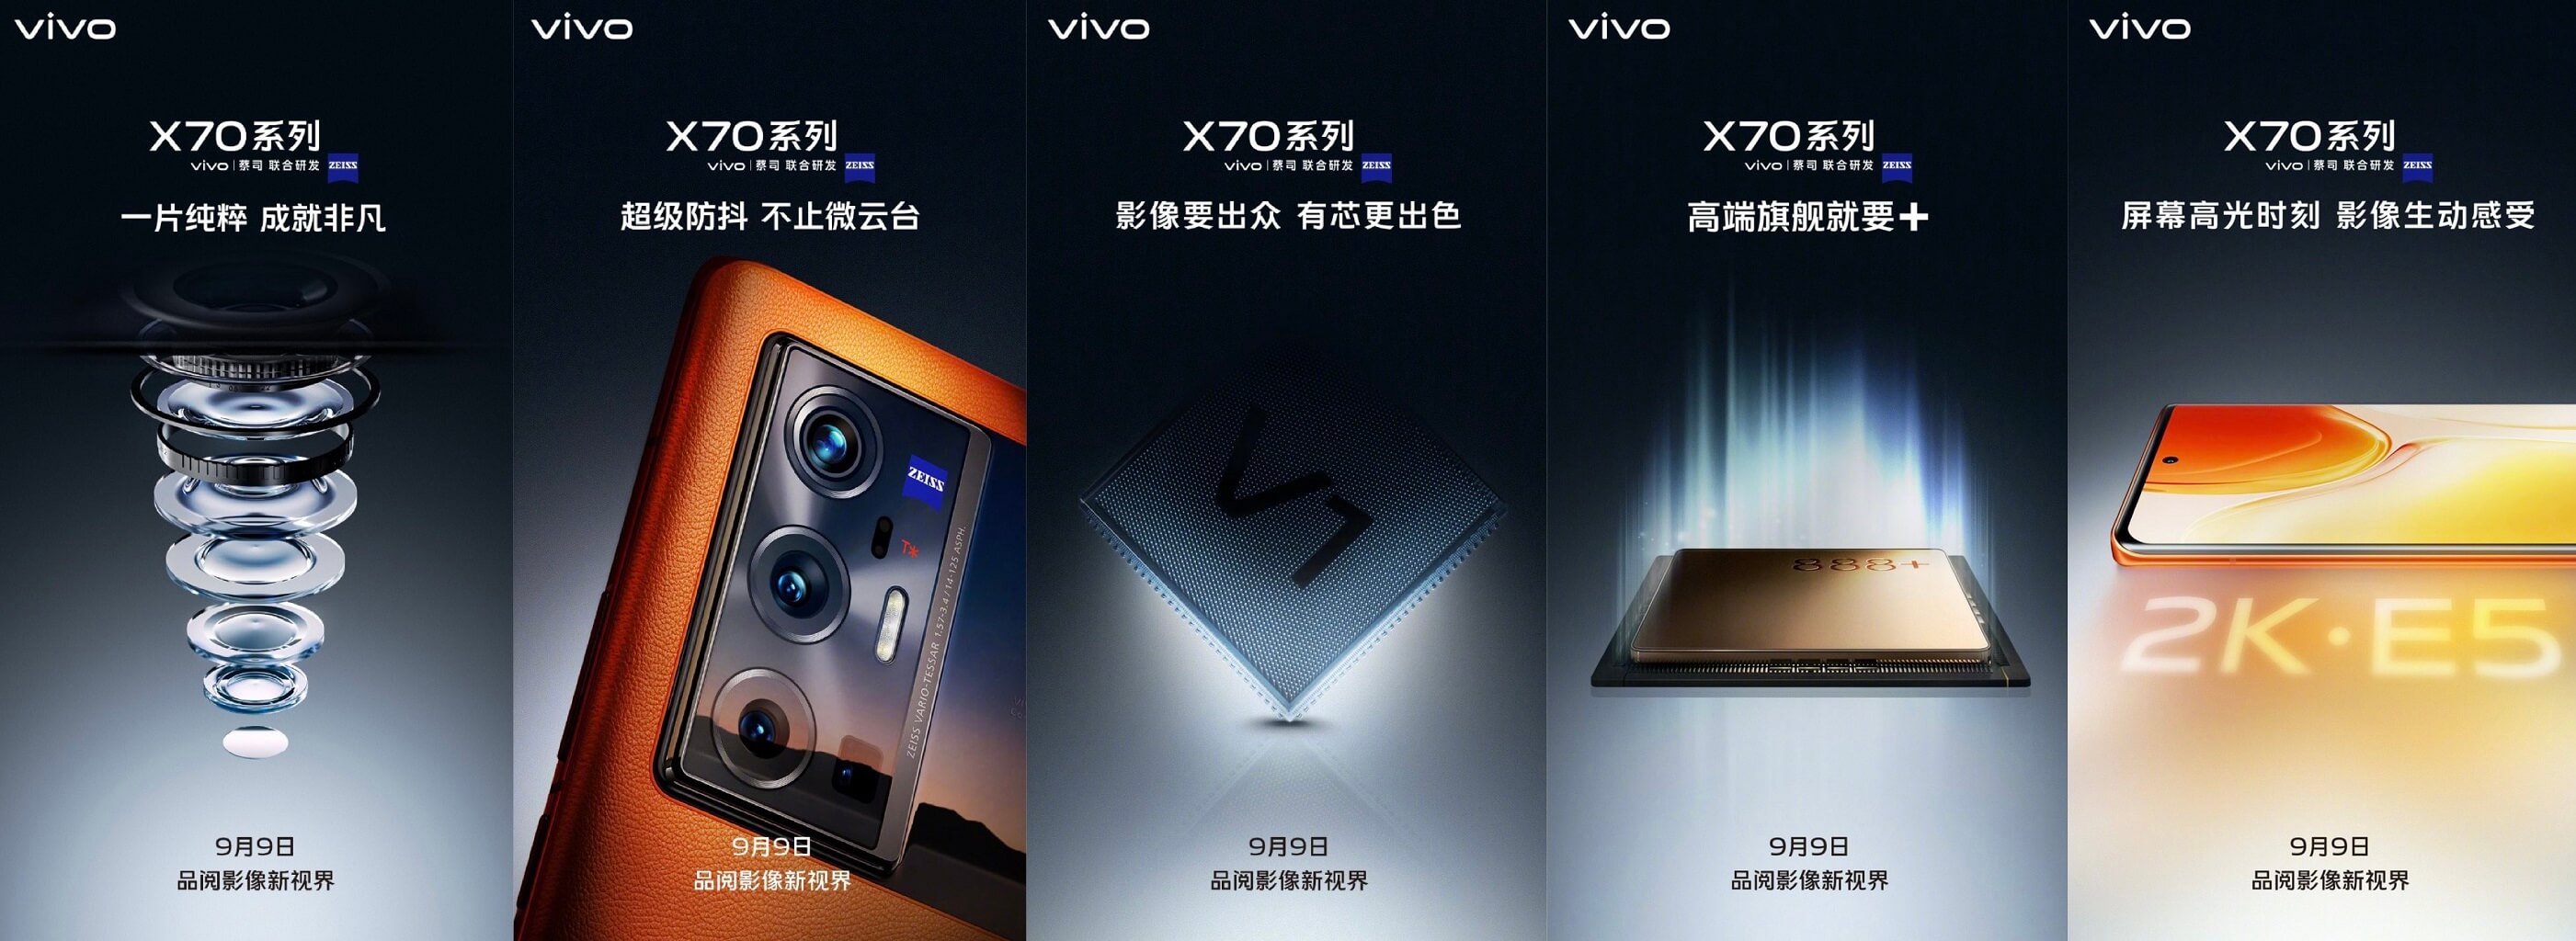 Vivo X70 Pro Plus 5G features